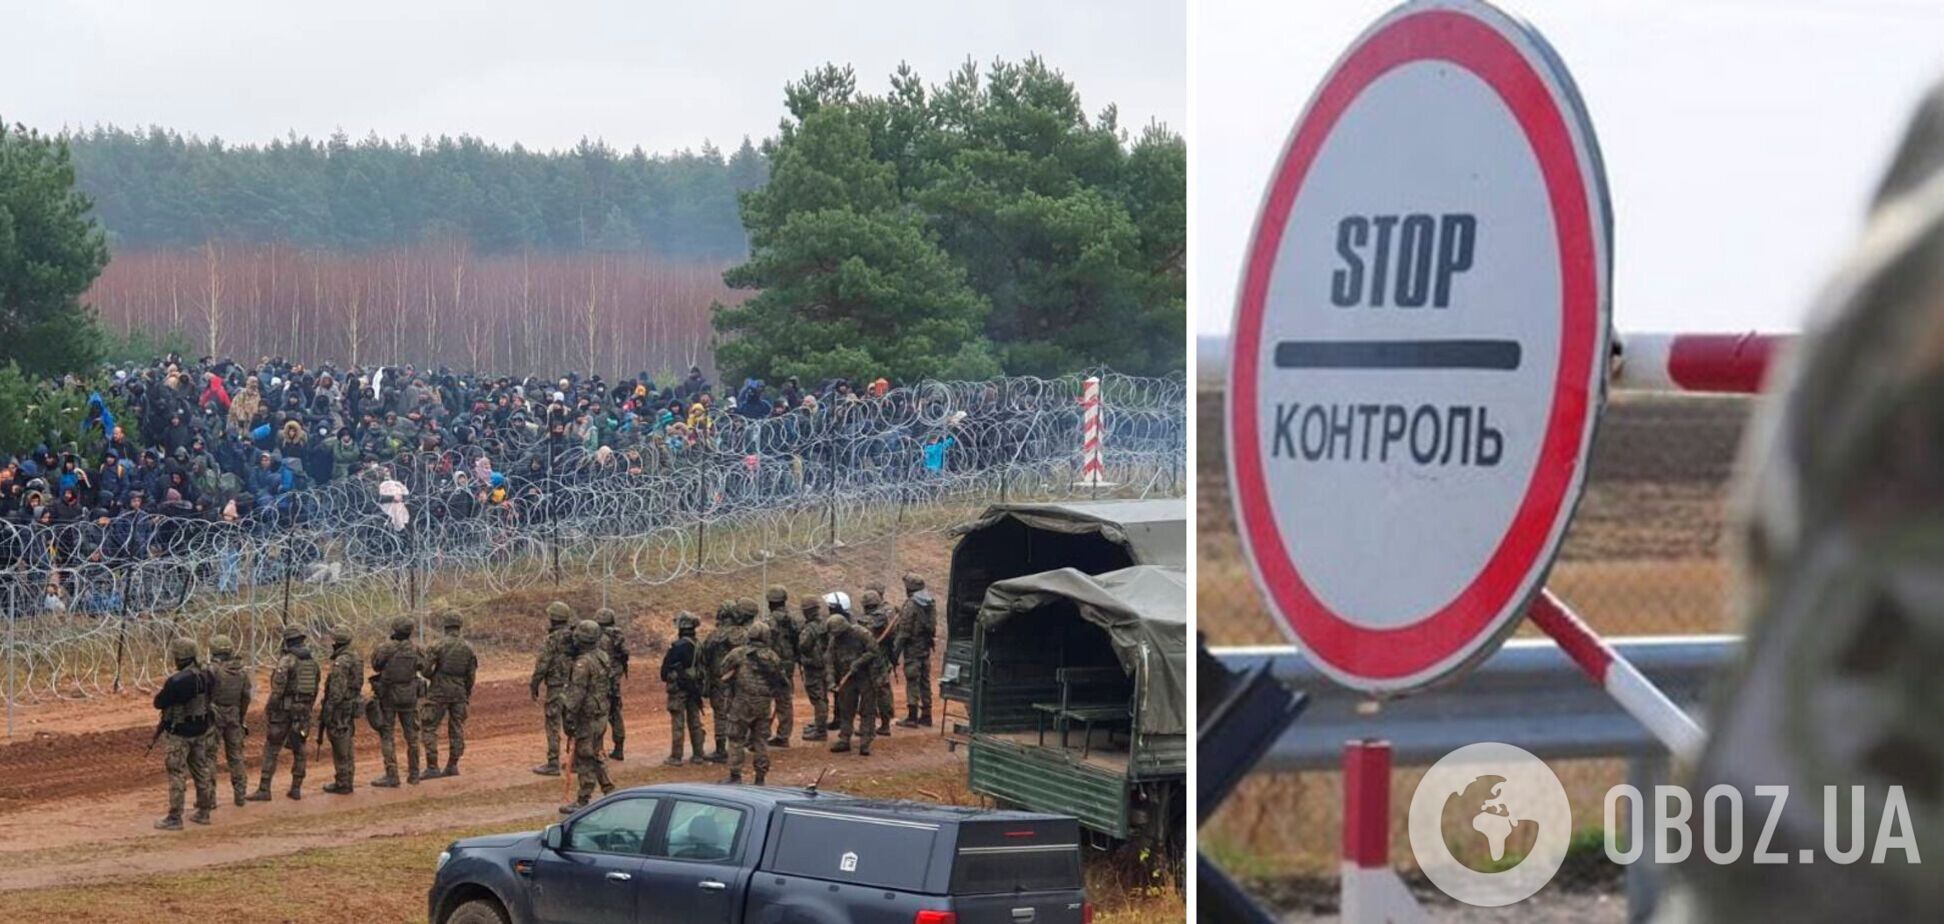 Геральд Кнаус и немецкие беженцы: при чем здесь Украина?